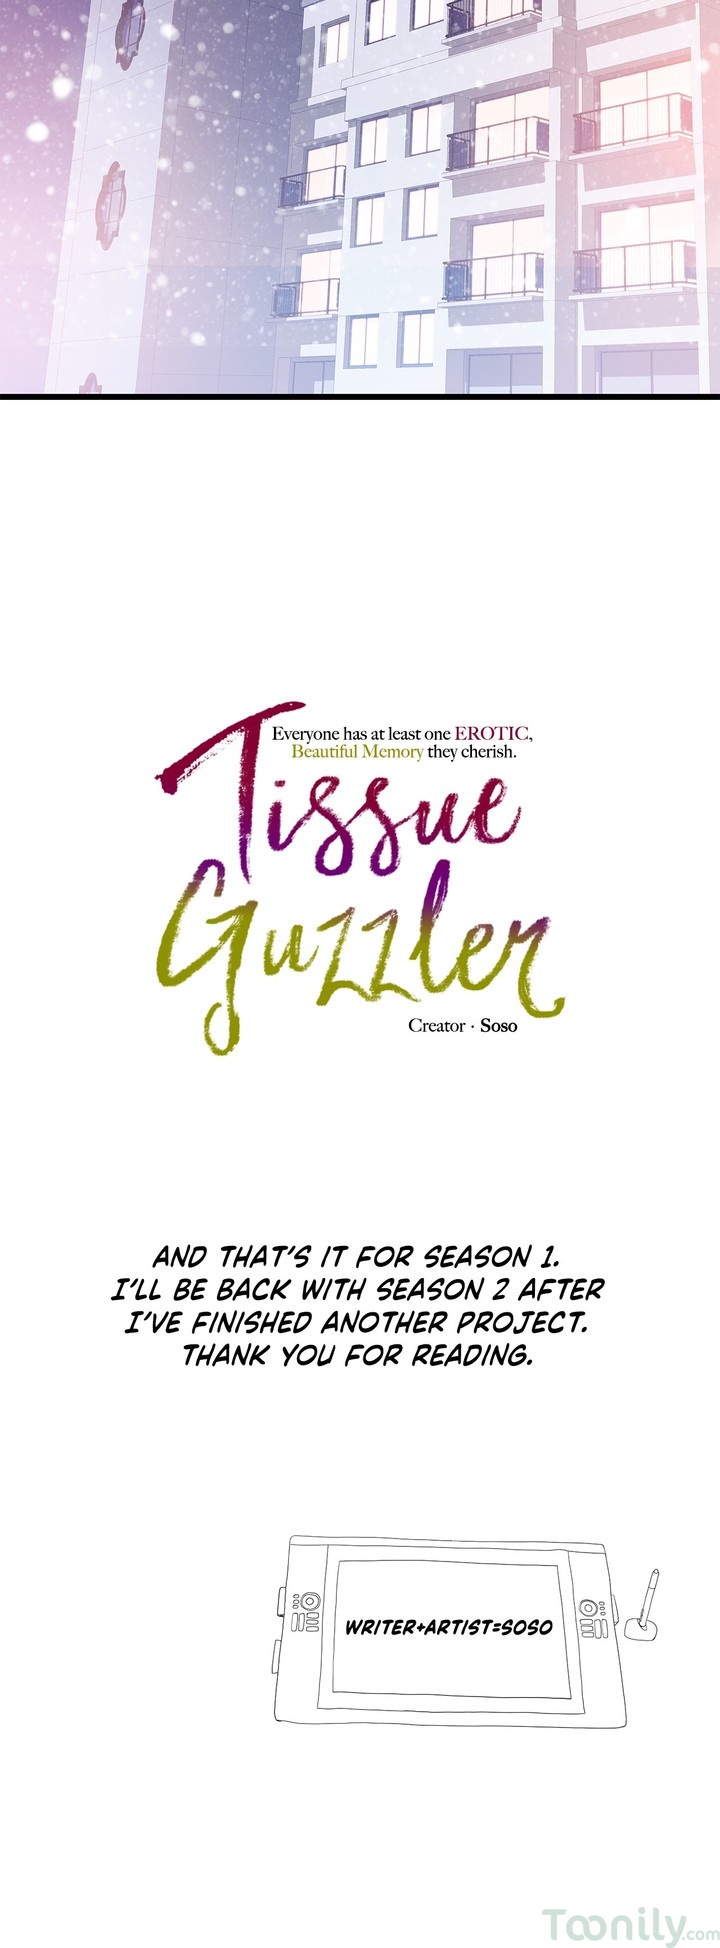 Tissue Guzzler image